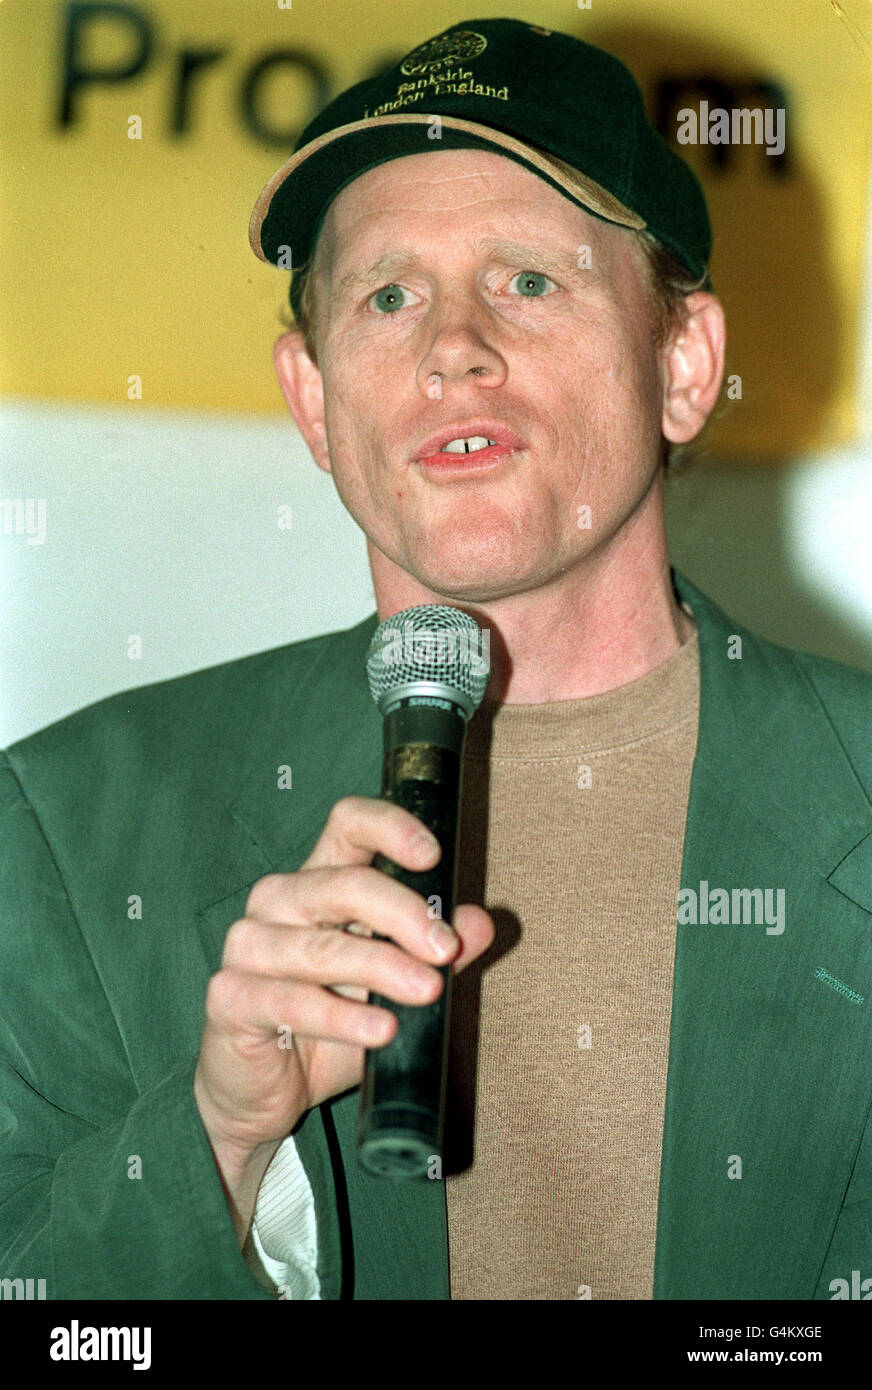 El director Ron Howard da una conferencia de prensa en el Pabellón Americano durante el Festival de Cine de Cannes 1999. Foto de stock